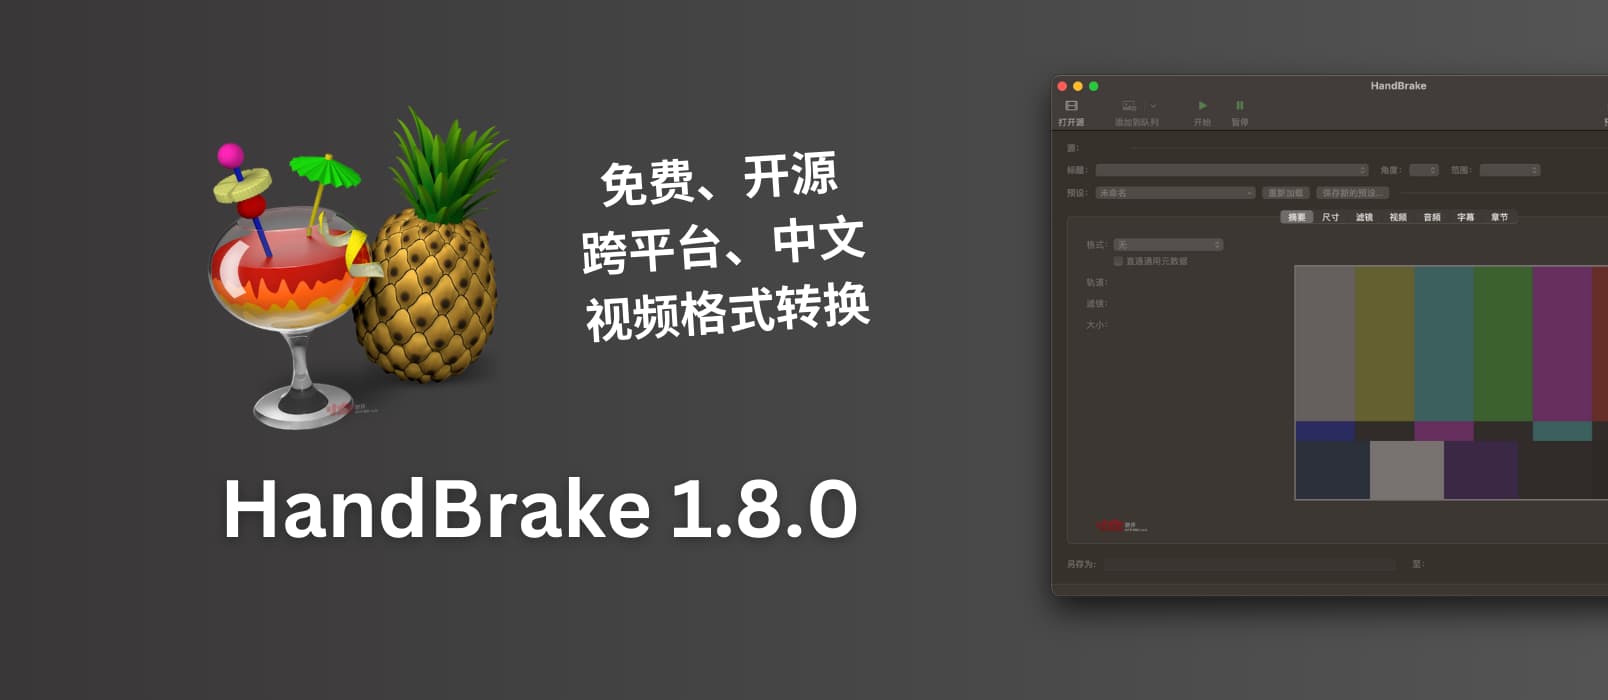 免费开源的视频格式转换软件 HandBrake 1.8.0 发布